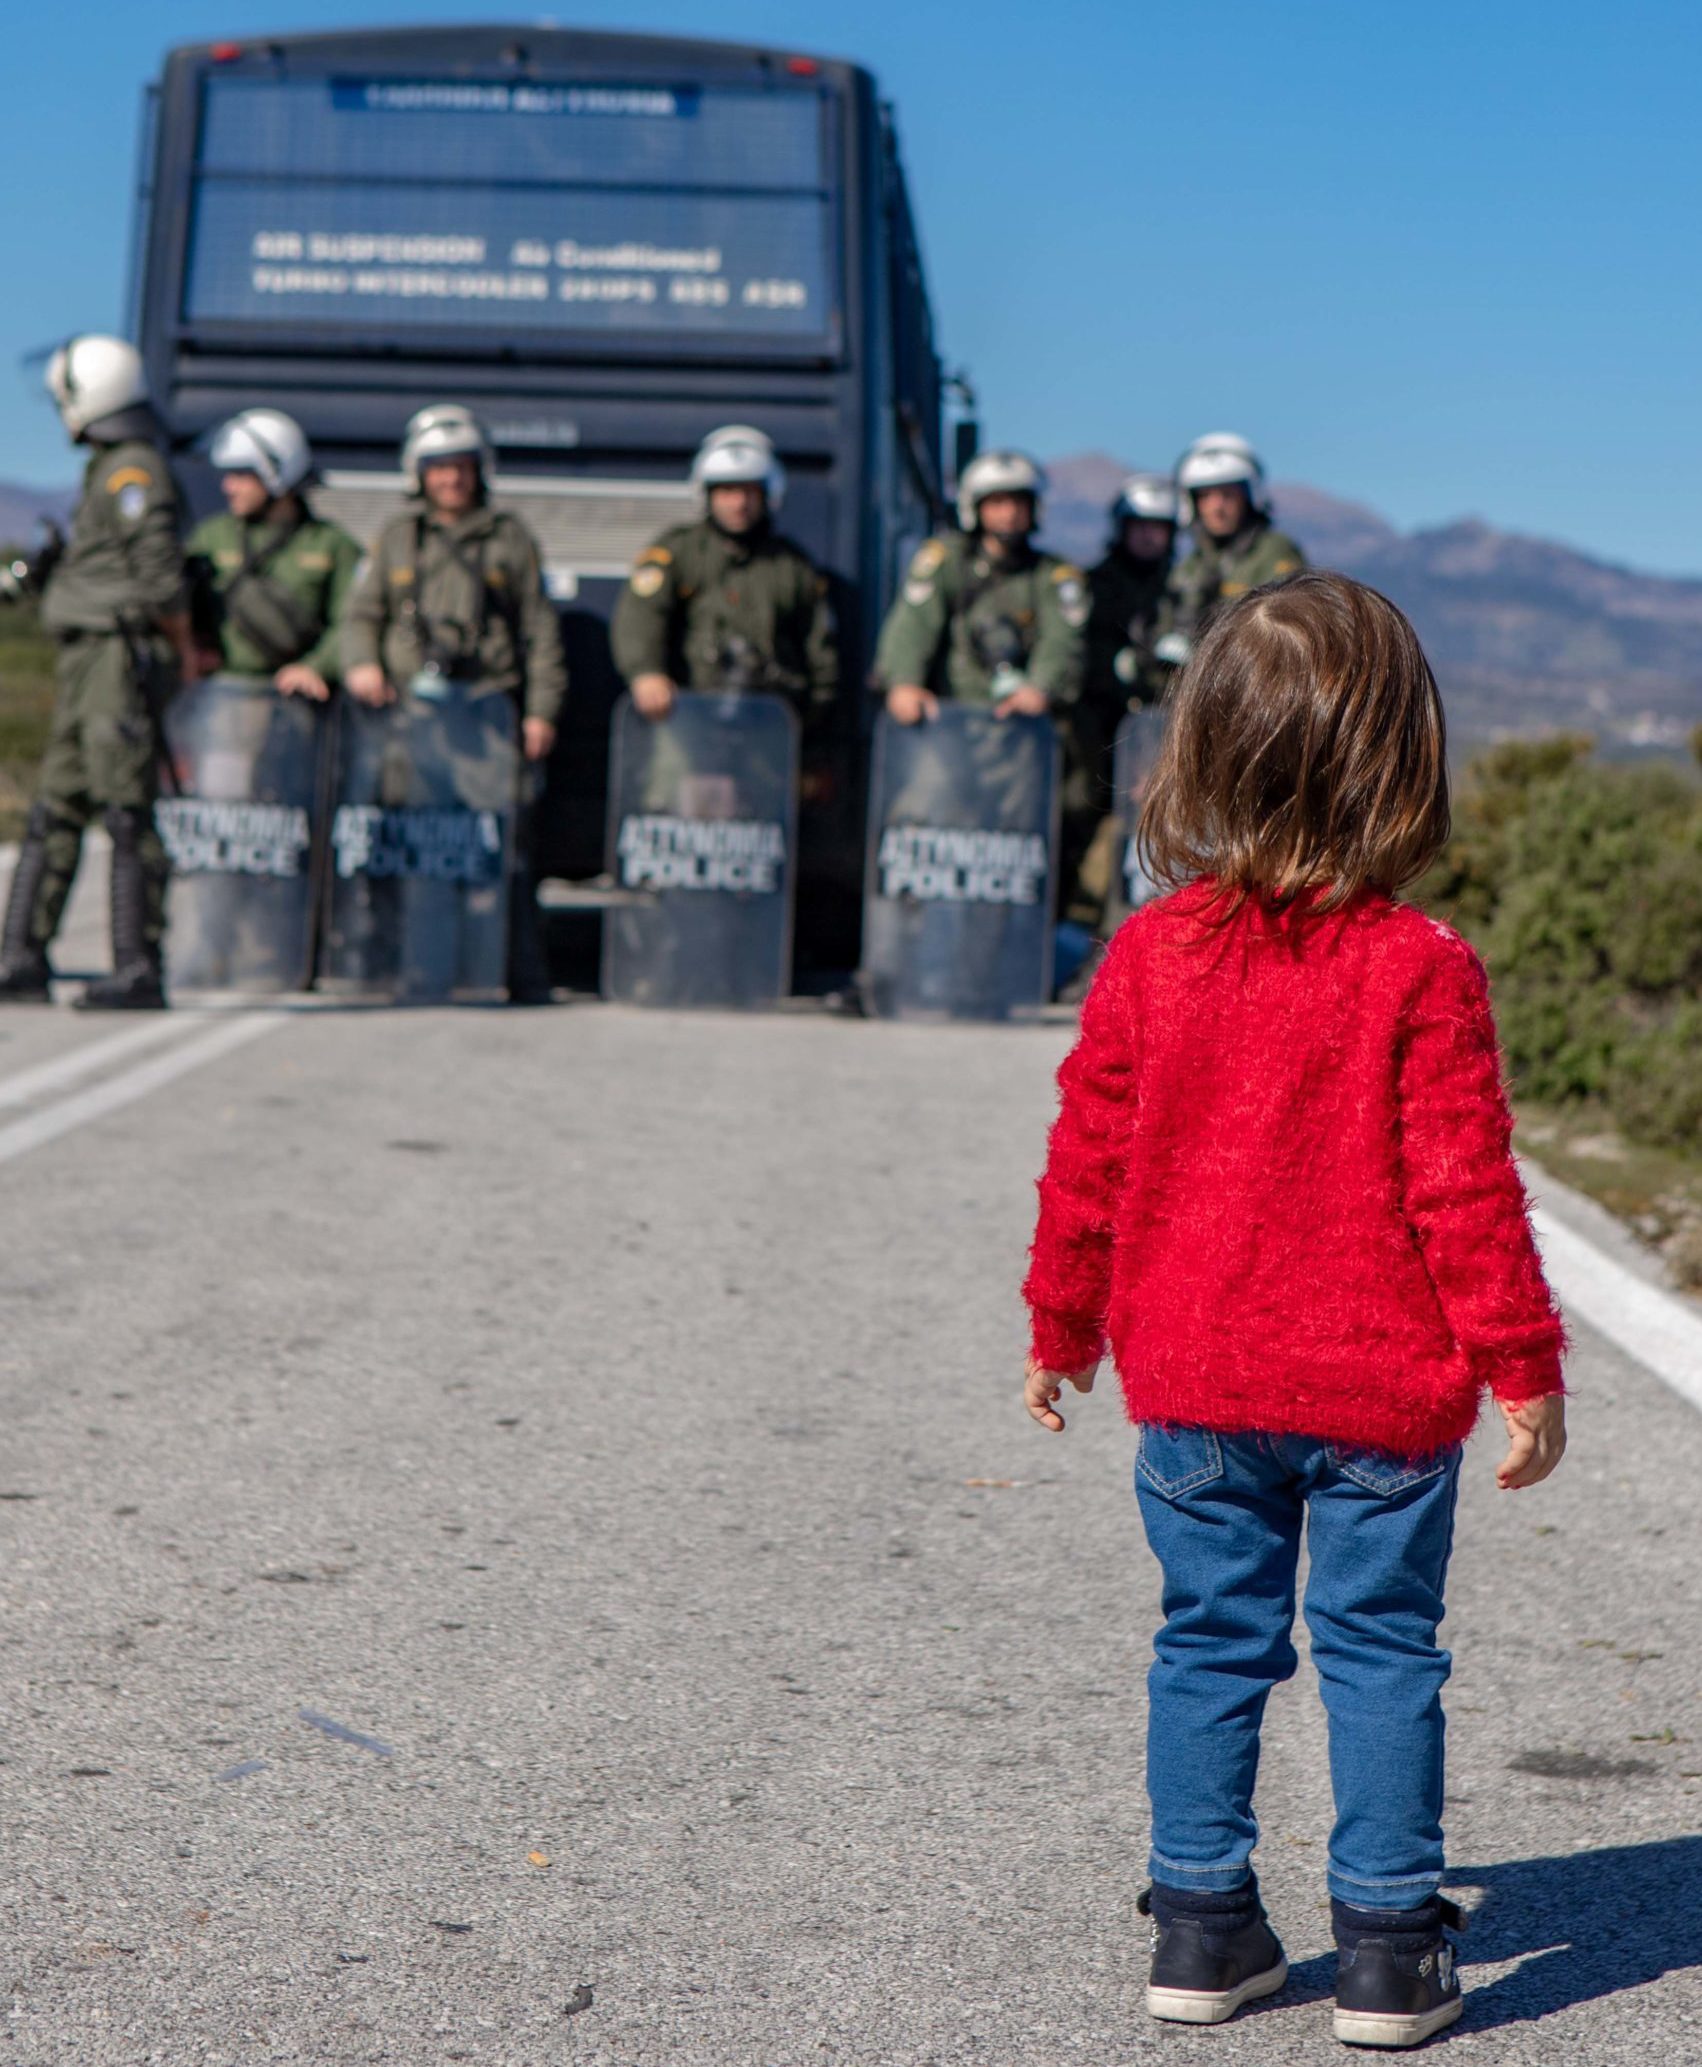 Η απόφαση της κυβέρνησης να ξεκινήσει τις διαδικασίες για την κατασκευή των κλειστών κέντρων κράτησης προσφύγων και μεταναστών σε Χίο και Λέσβο με τη μεταφορά των βαρέων οχημάτων και μηχανημάτων […]